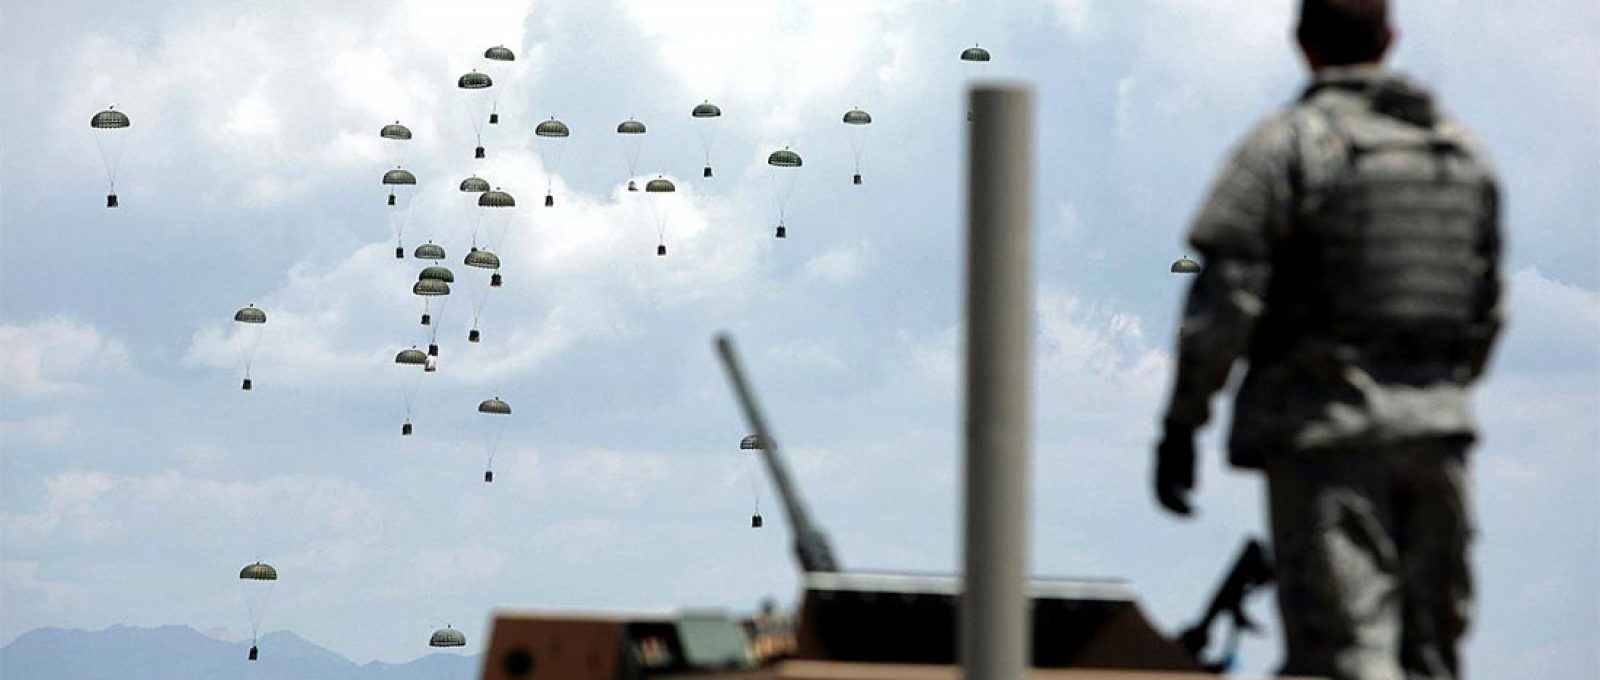 Suprimentos são lançados às tropas americanas na província de Ghazni, no Afeganistão, em maio de 2007 (Foto: Nicolas Asfouri/AFP/Getty Images).